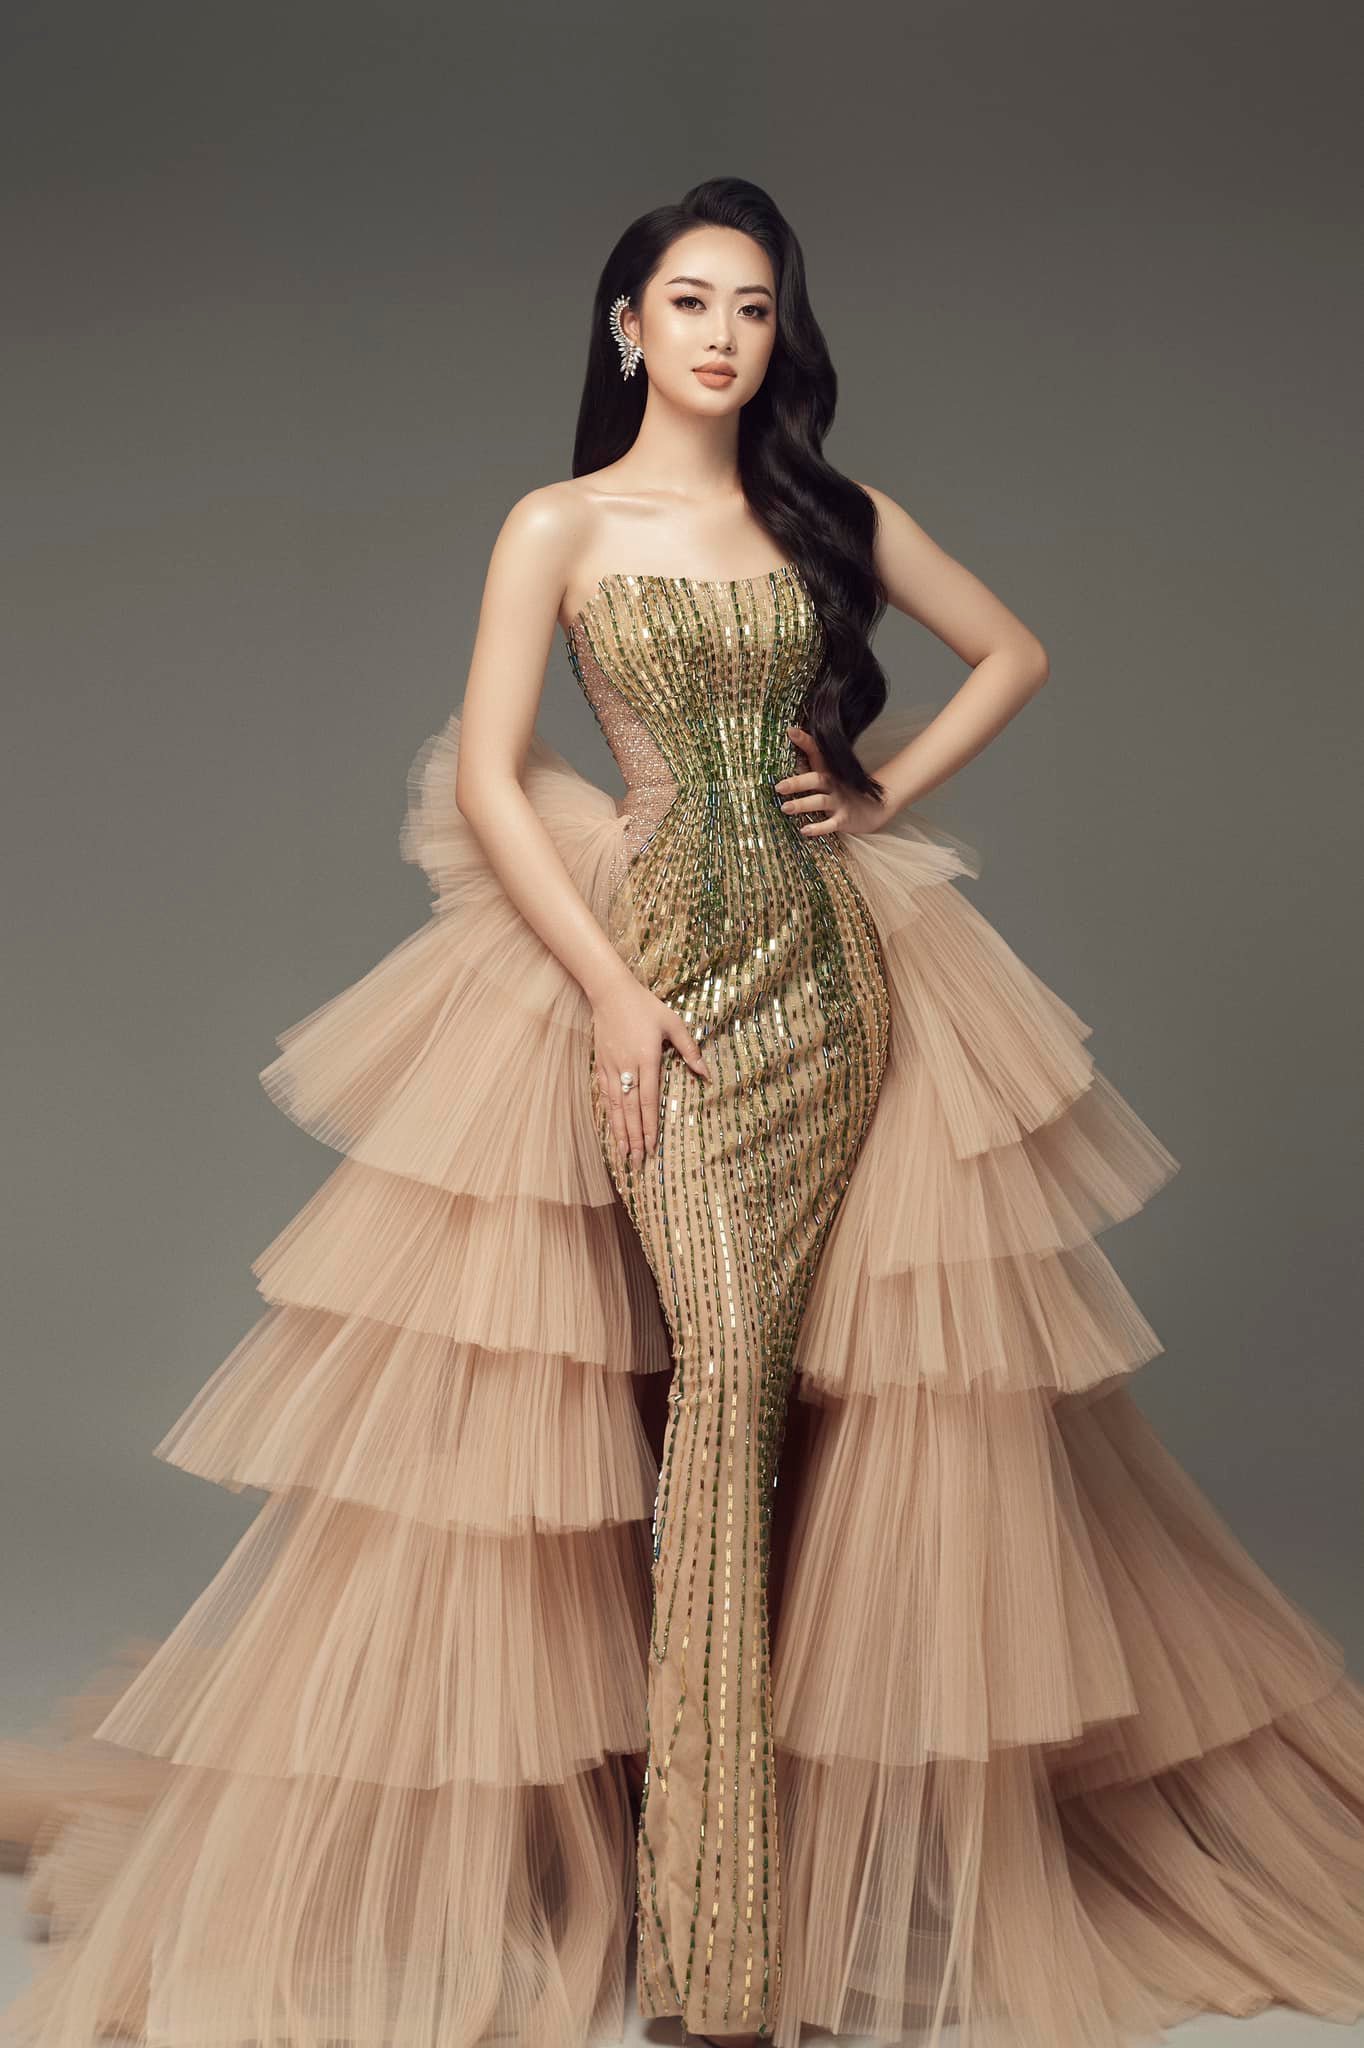 Vũ Như Quỳnh (1999, Gia Lai) tiếp tục thi nhan sắc, sau khi dừng top 37 Hoa hậu Thế giới Việt Nam 2022. Đến với Miss Grand VietNam 2022, Vũ Như Quỳnh mong sẽ lột xác, vượt qua những giới hạn để tự tin, bản lĩnh hơn. 